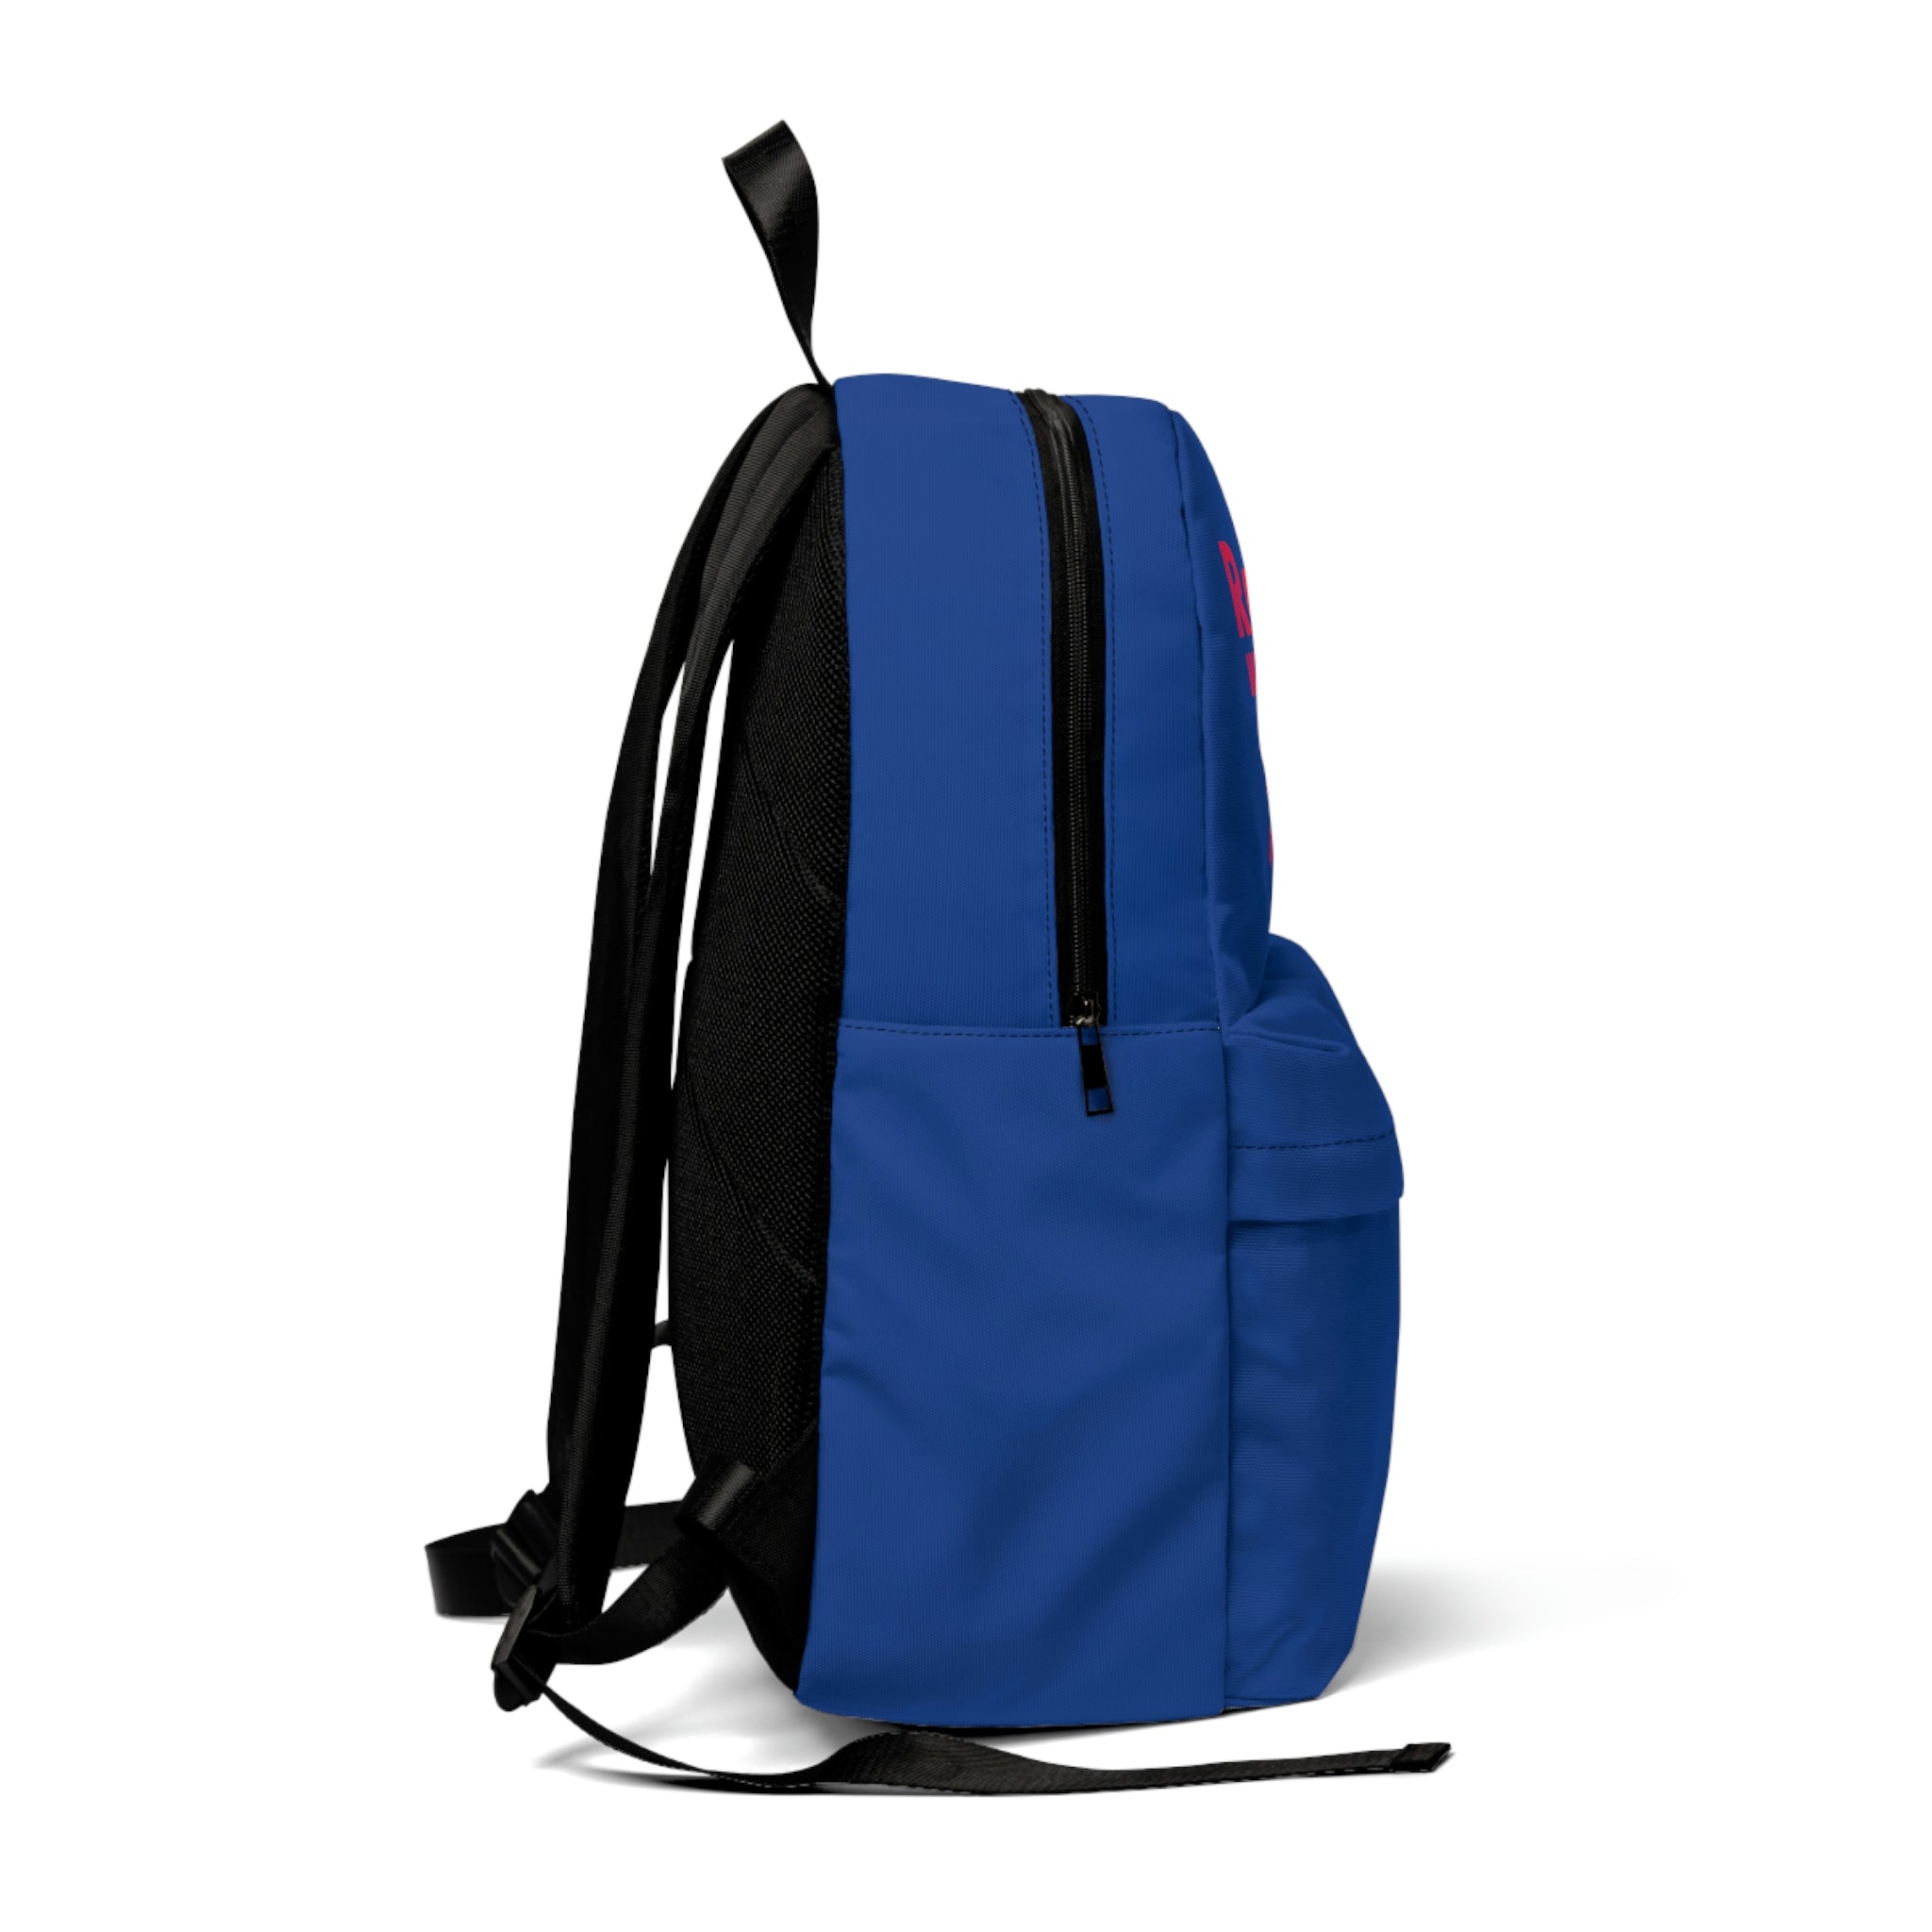 Ra kia - Classic Backpack